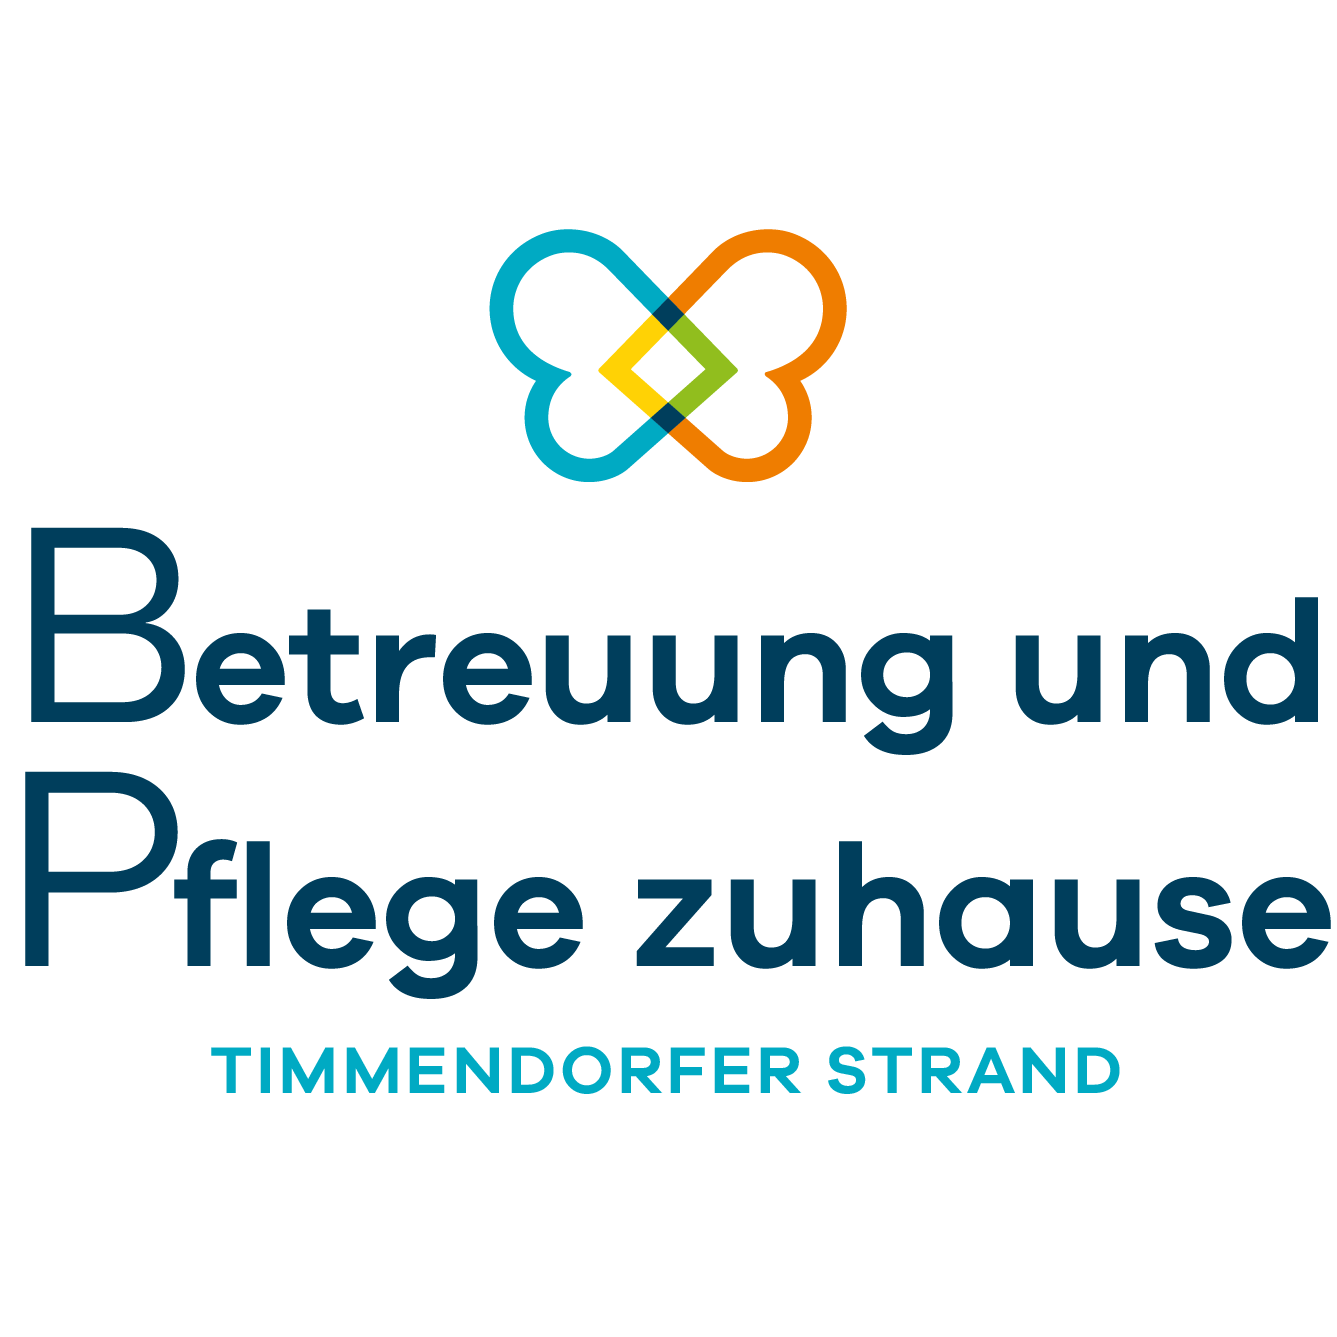 Betreuung und Pflege zuhause Timmendorfer Strand Logo